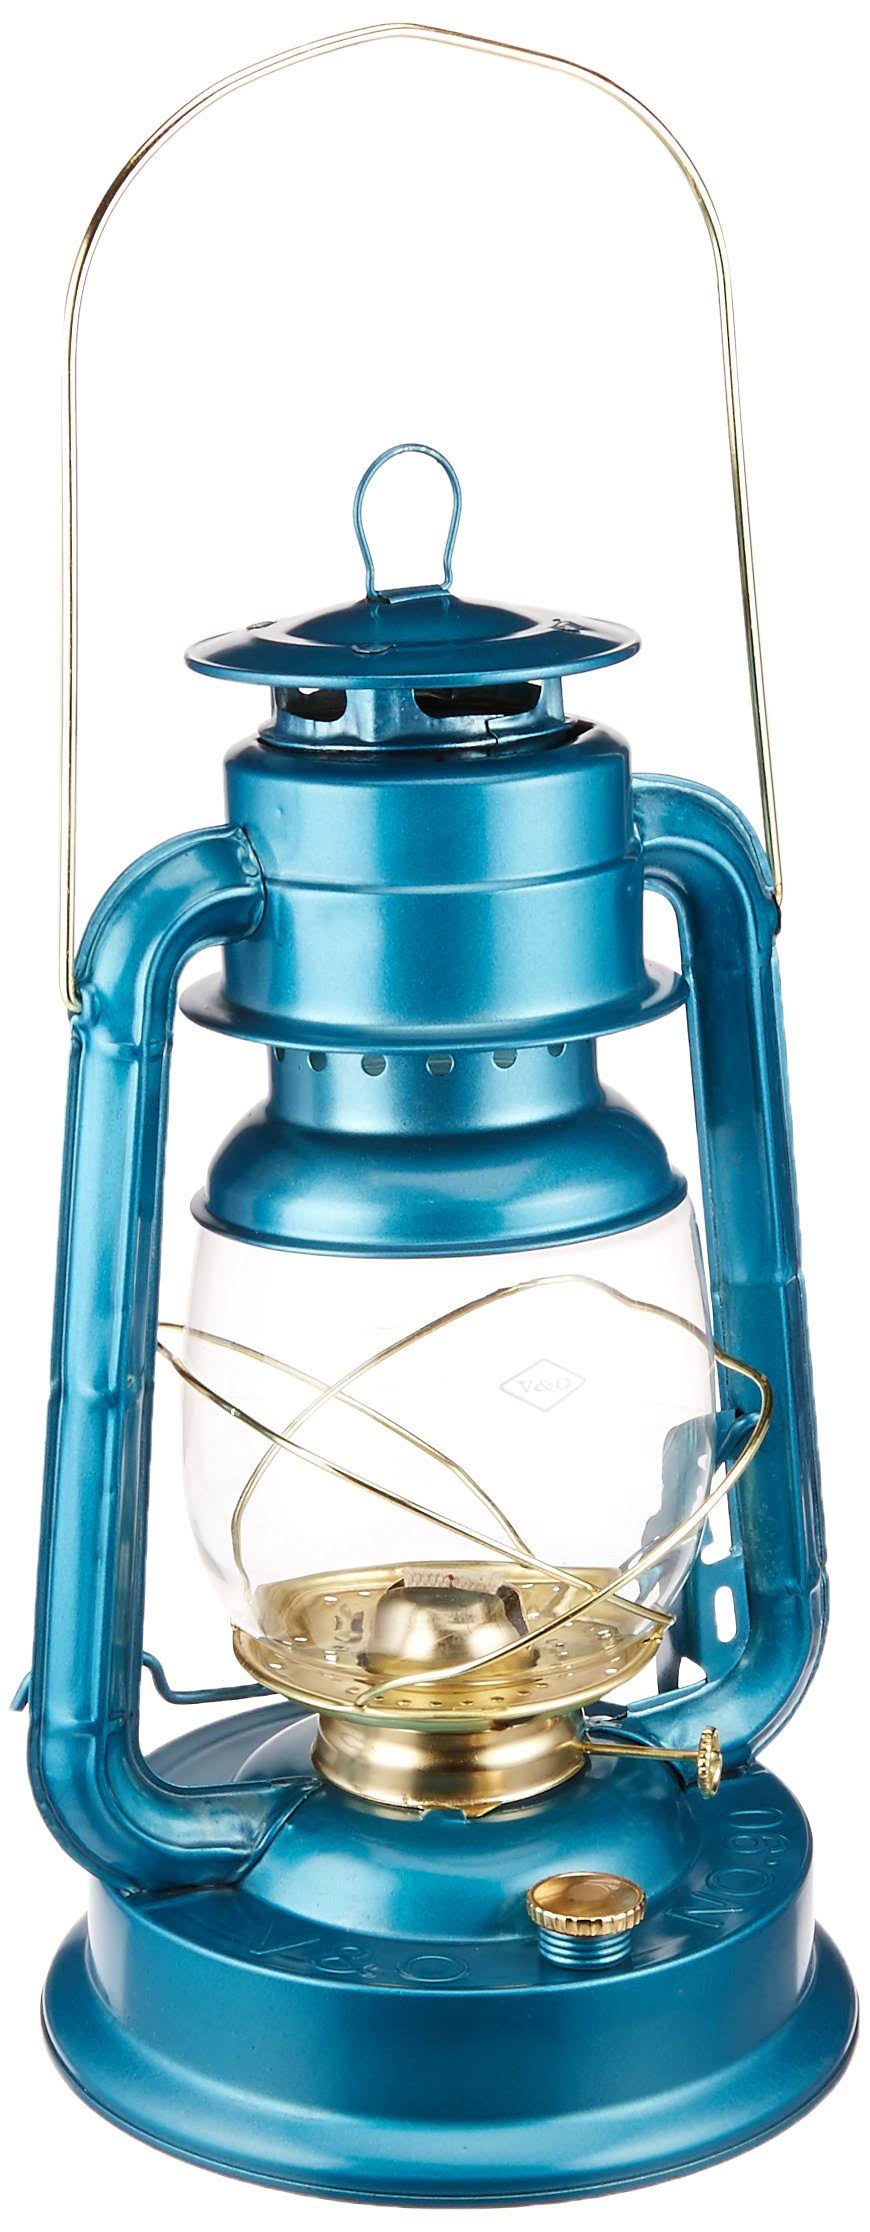 21st Century Air Pilot Fuel Lantern - 12 Candle Power, Blue